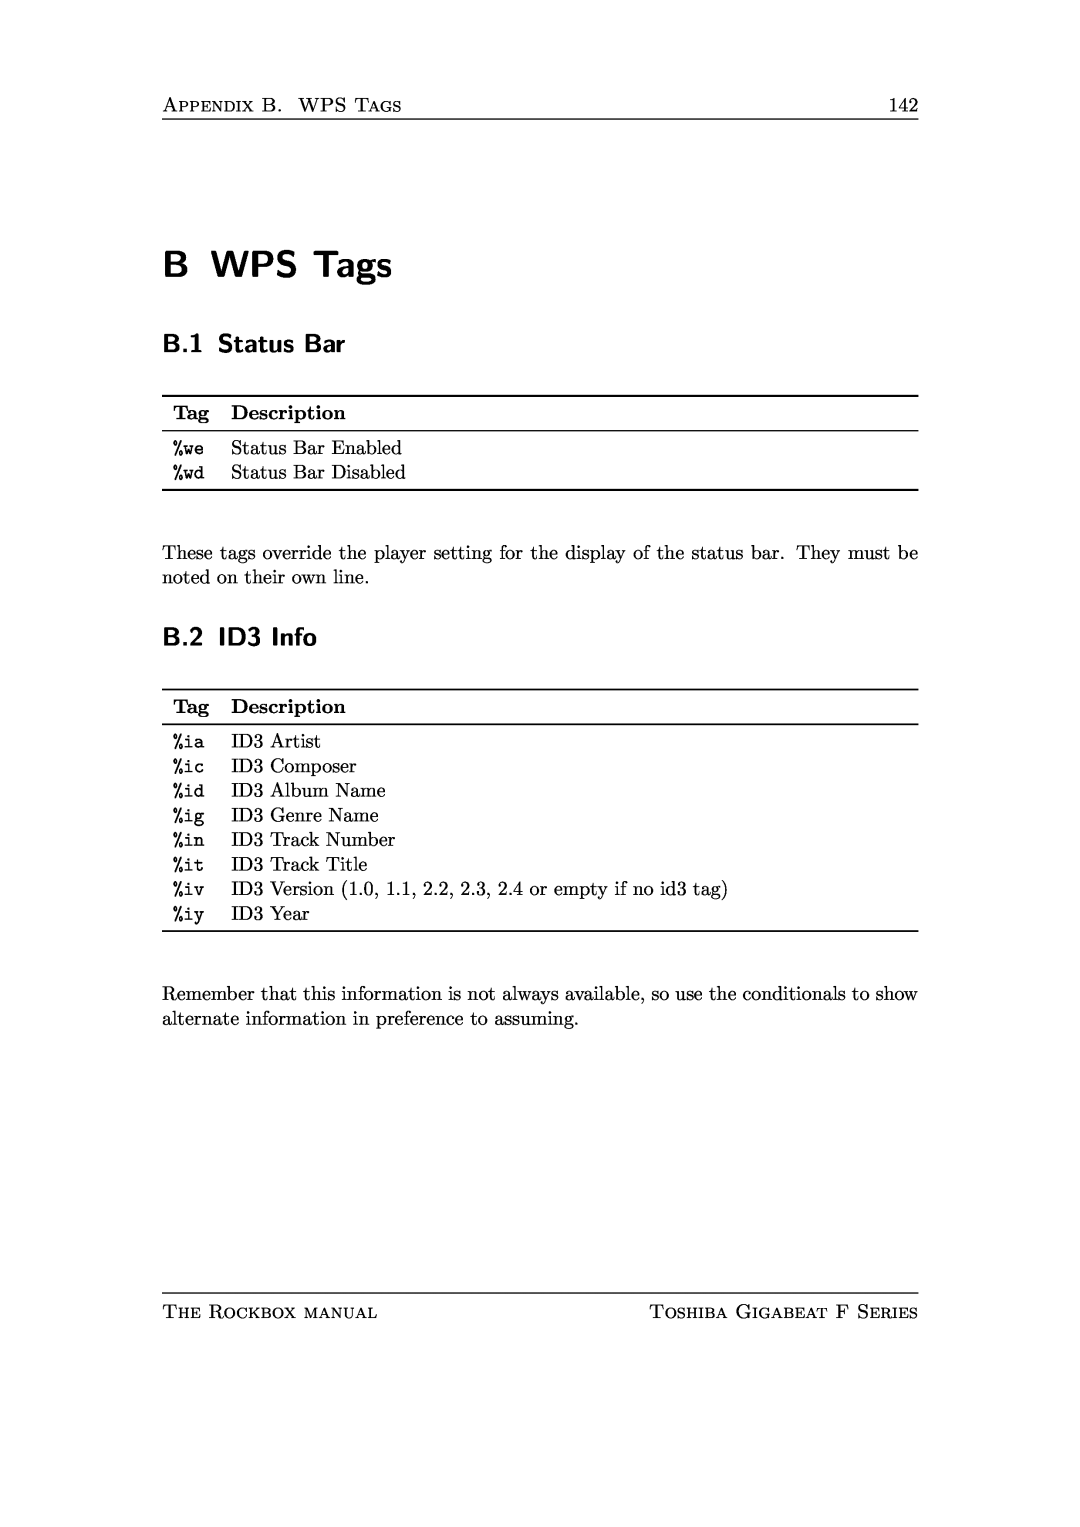 Toshiba F Series manual B WPS Tags, B.1 Status Bar, B.2 ID3 Info 